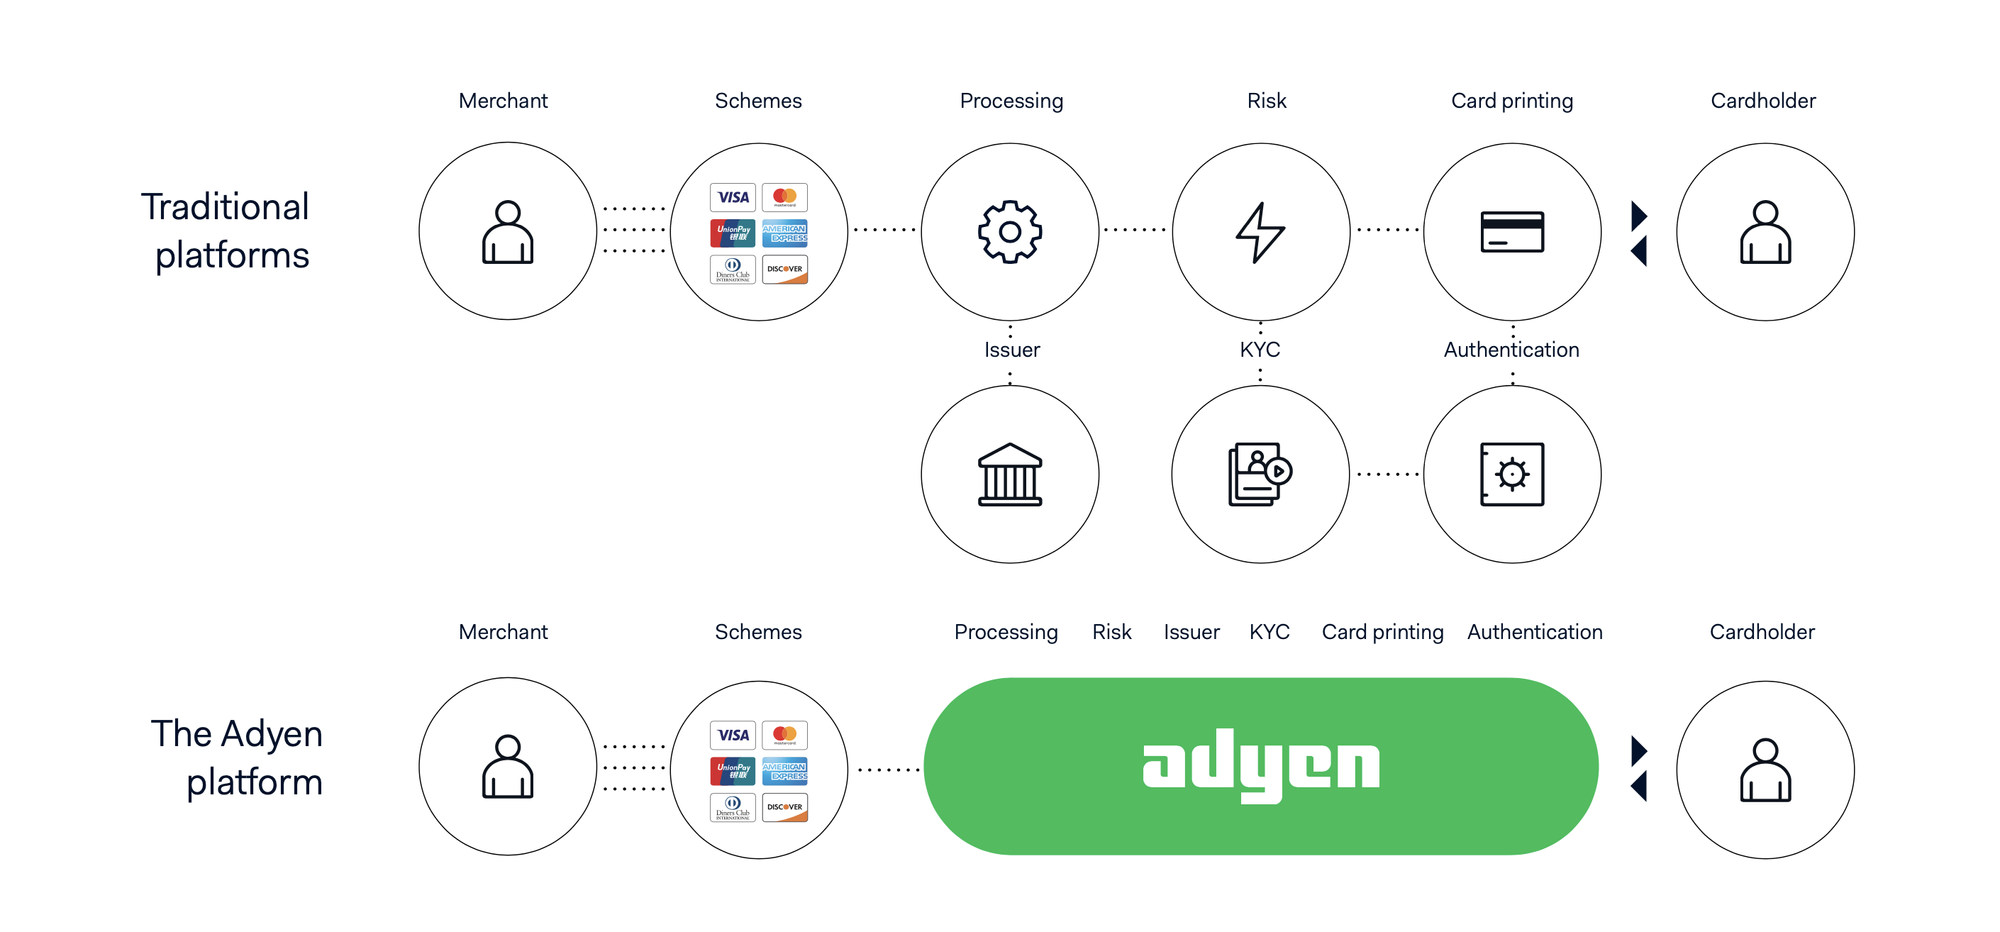 Adyen's Issuing Platform